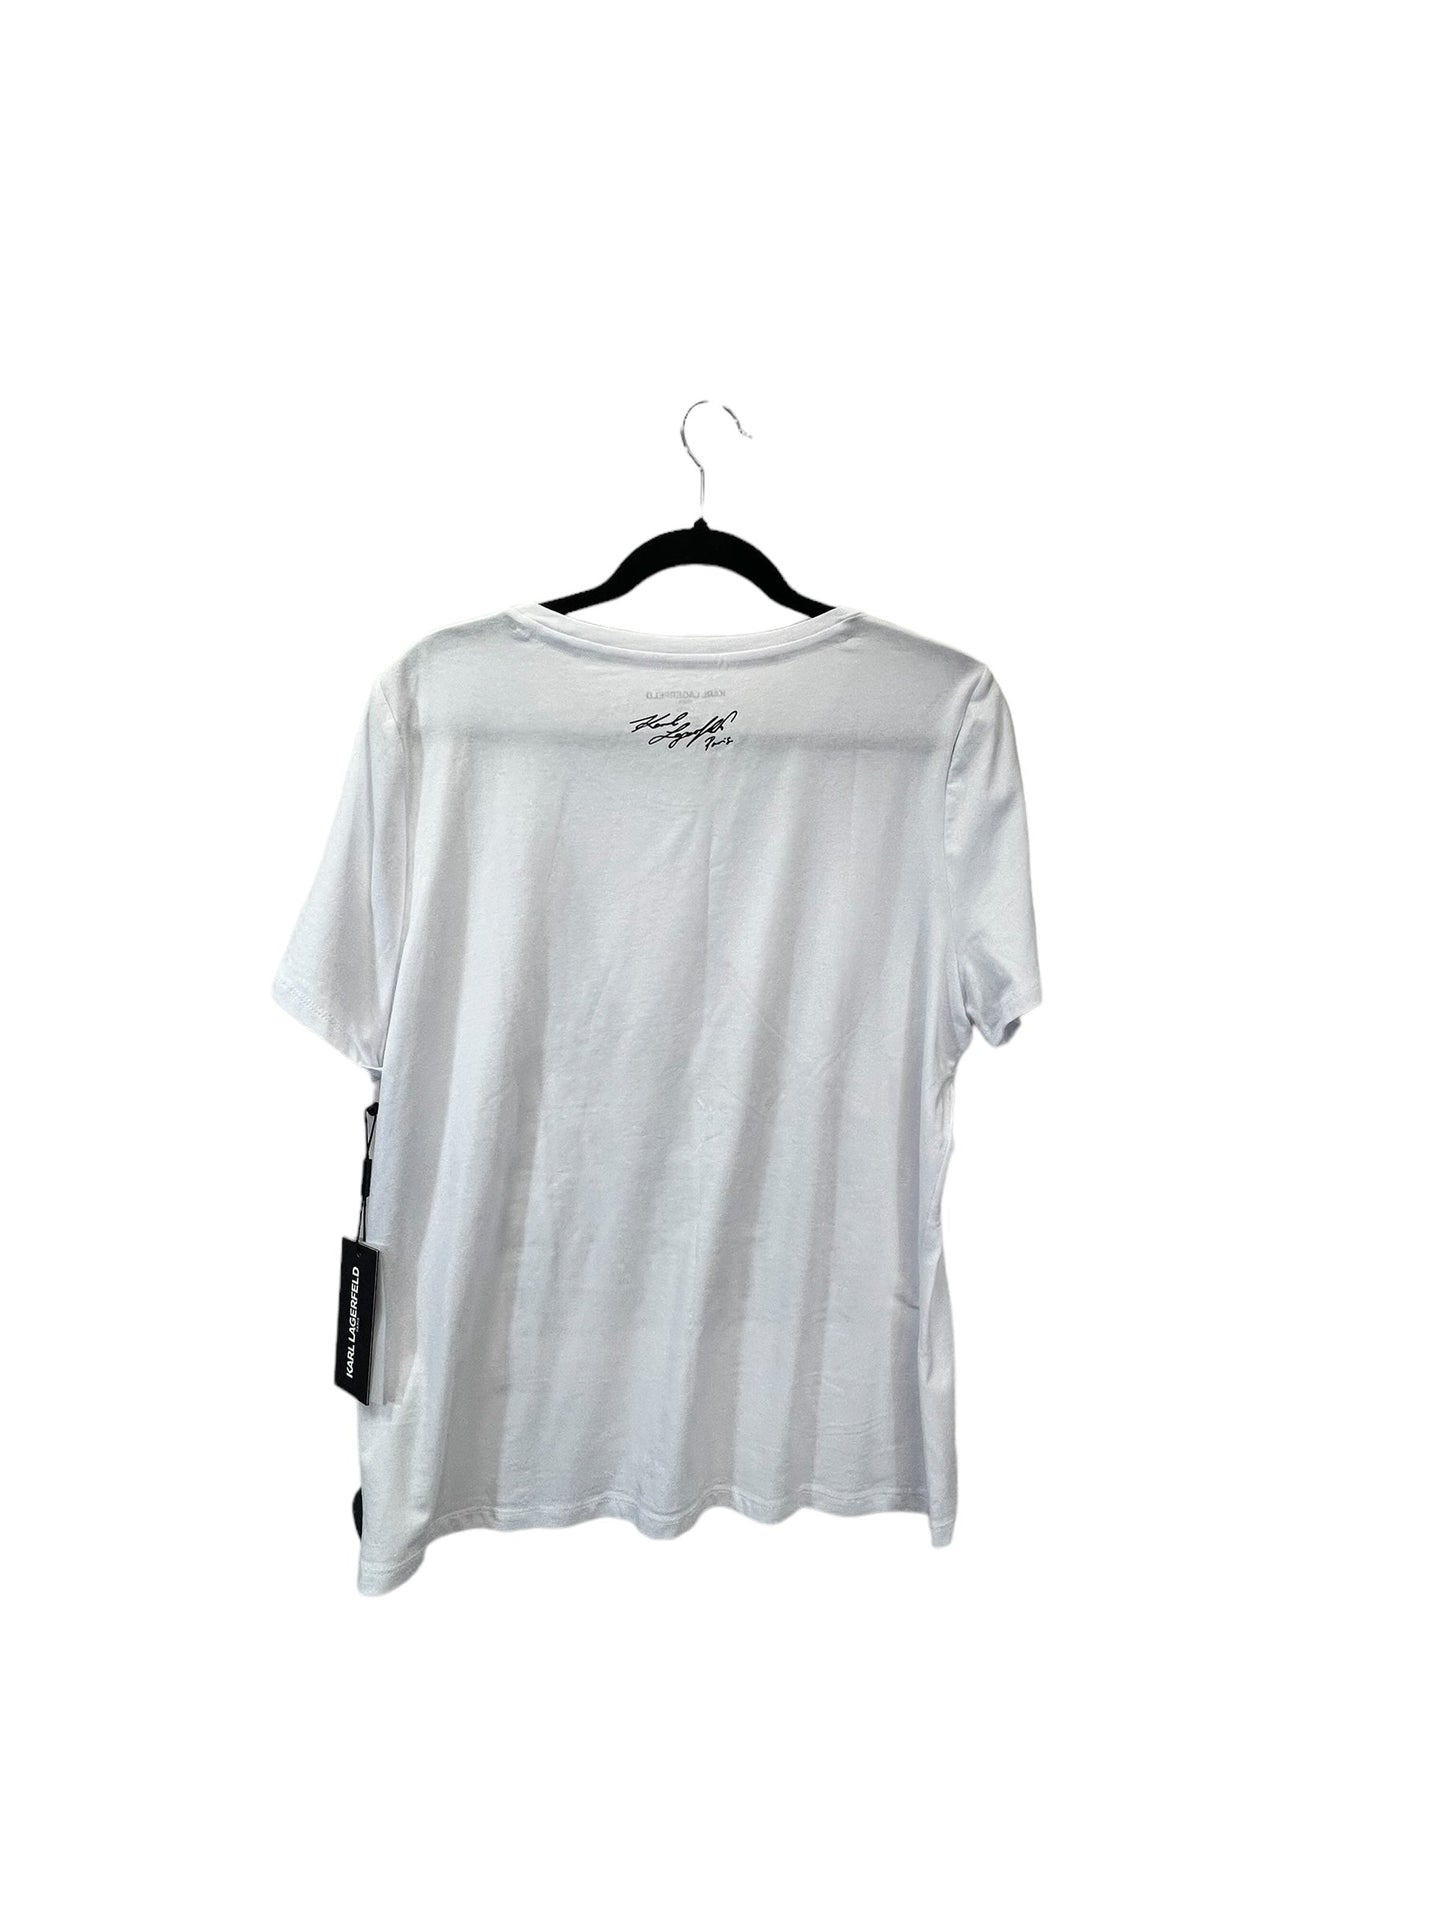 Black & White Top Short Sleeve Designer Karl Lagerfeld, Size L